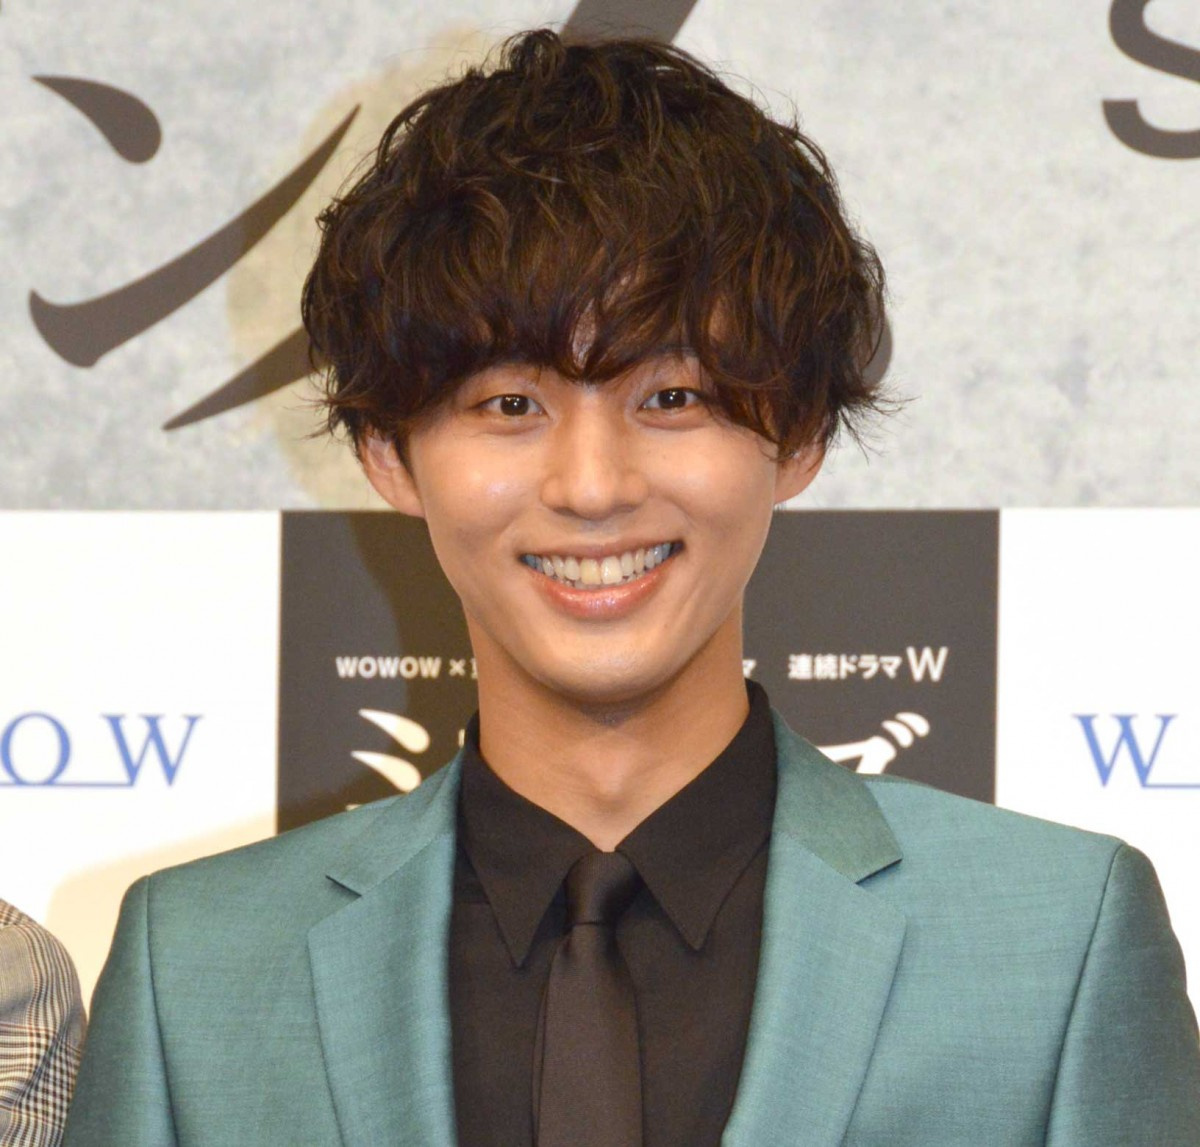 藤ヶ谷太輔 キスマイは良いグループです 古谷一行に褒められ笑顔 Oricon News